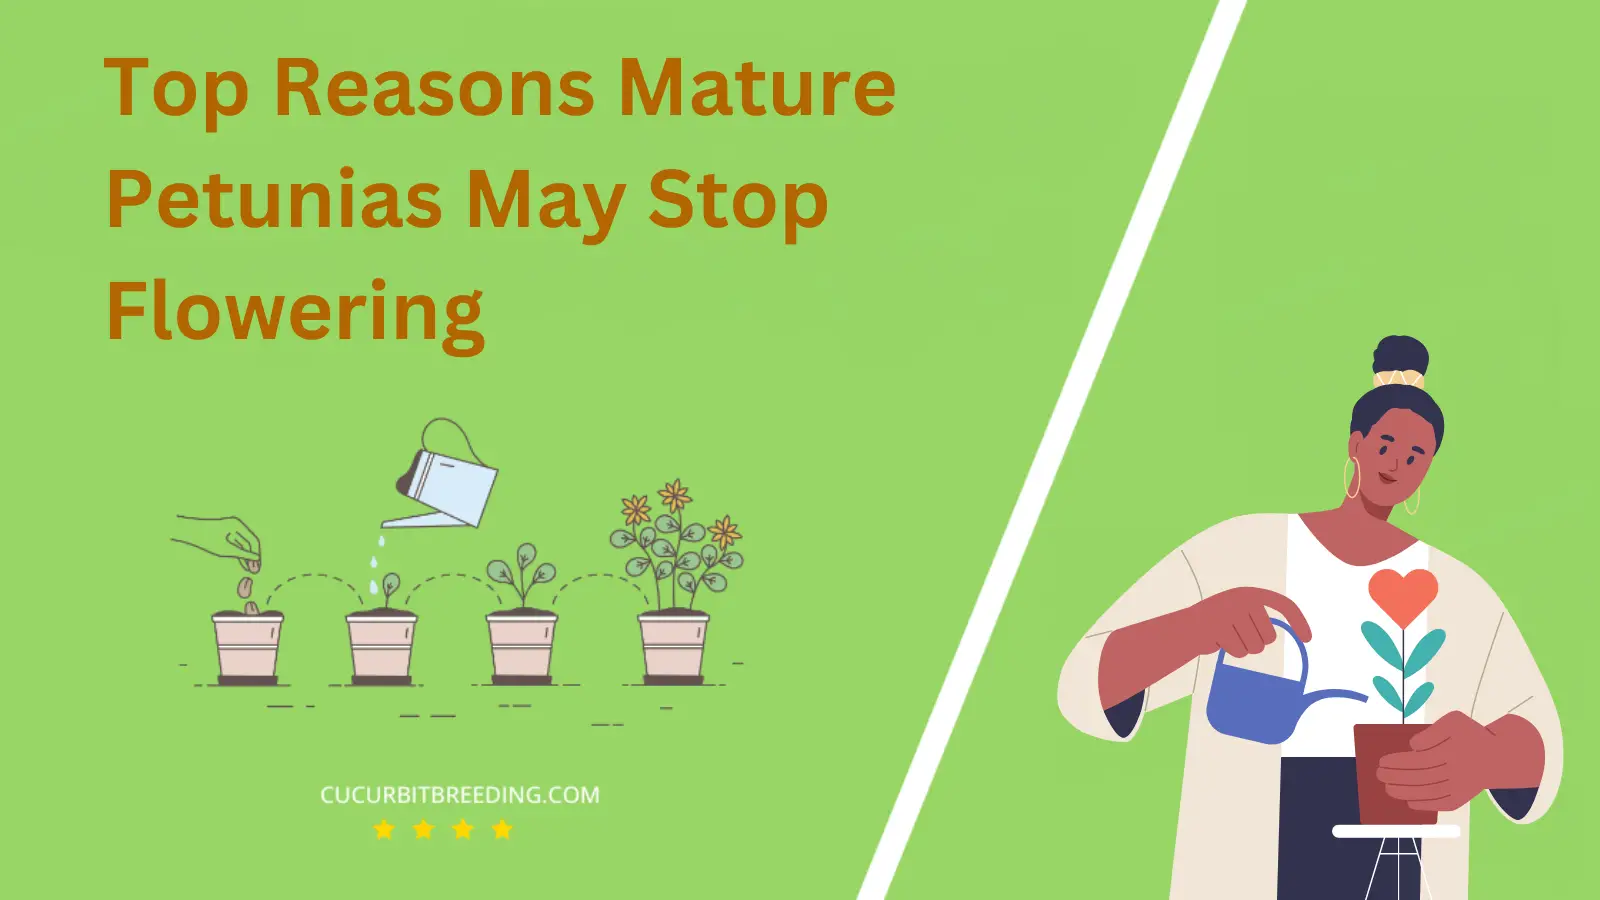 Top Reasons Mature Petunias May Stop Flowering